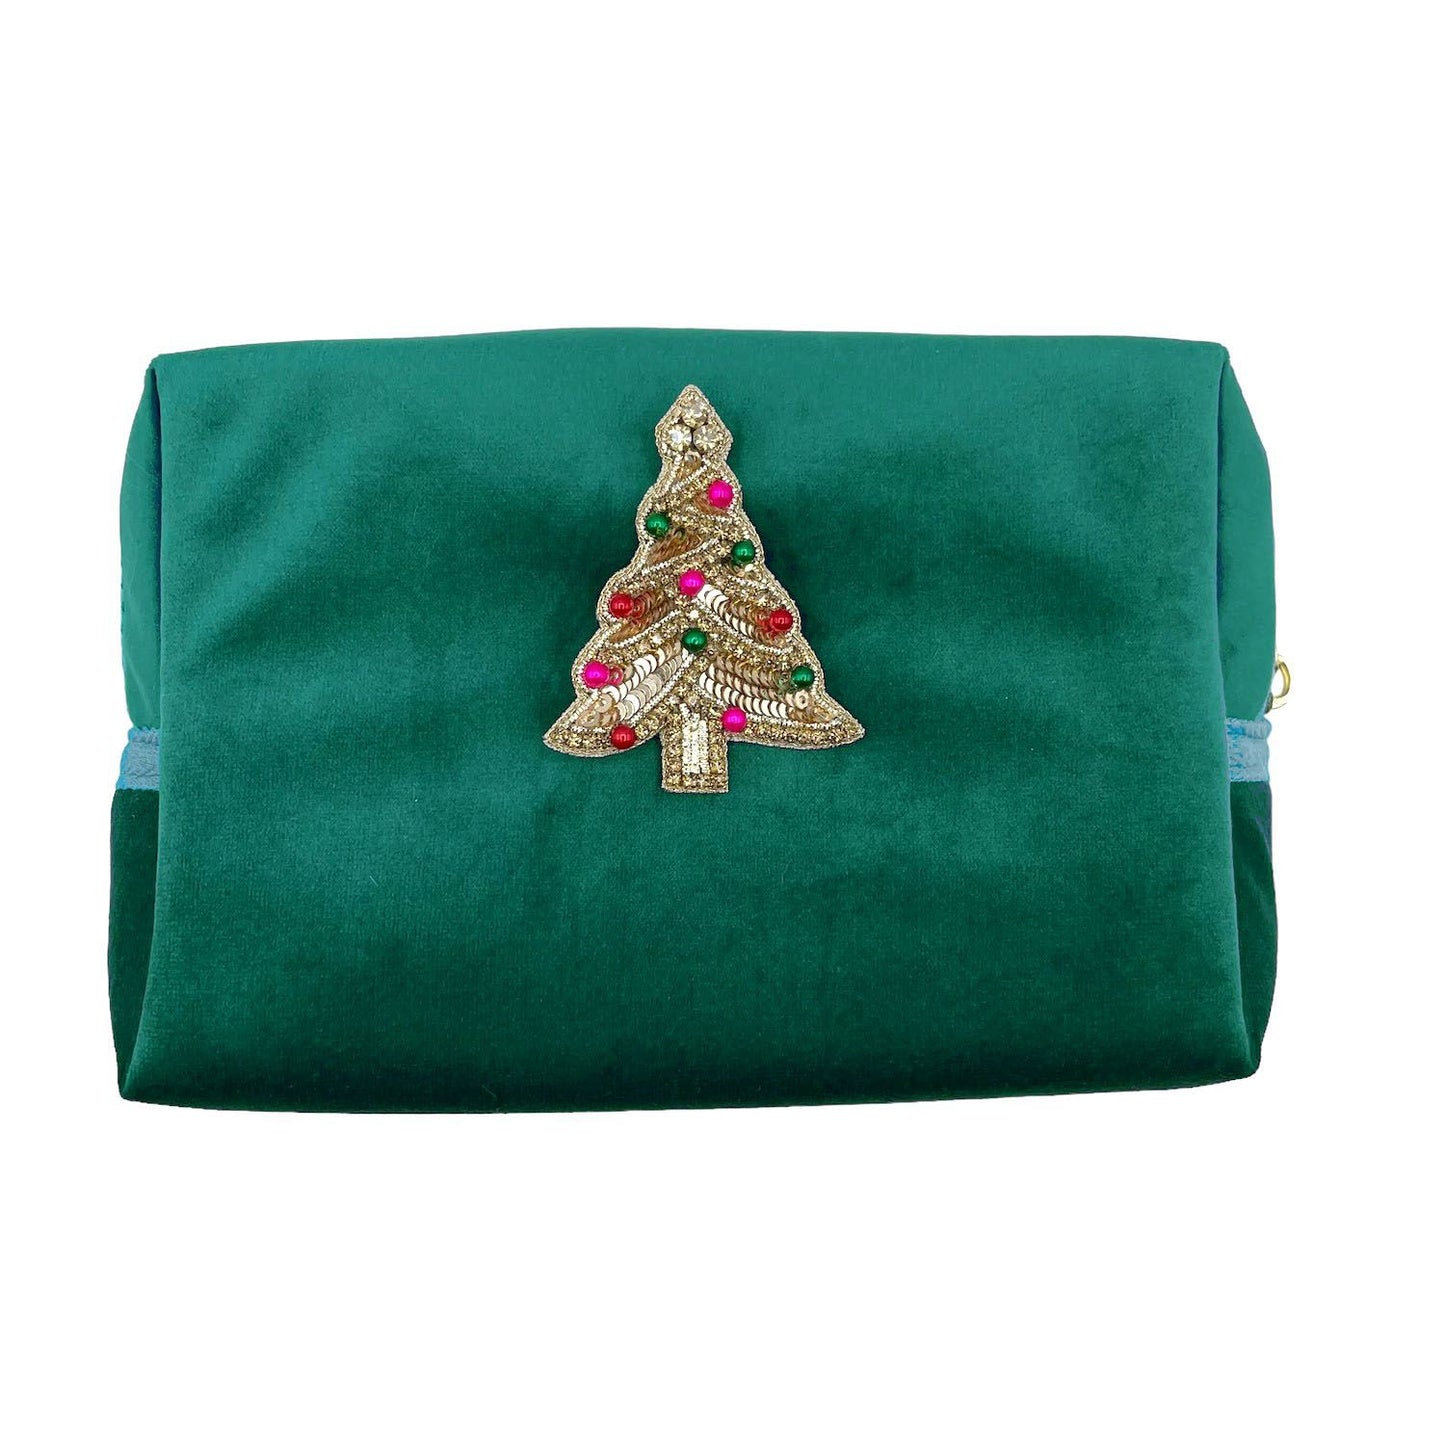 Green make-up bag & kitsch tree pin - recycled velvet